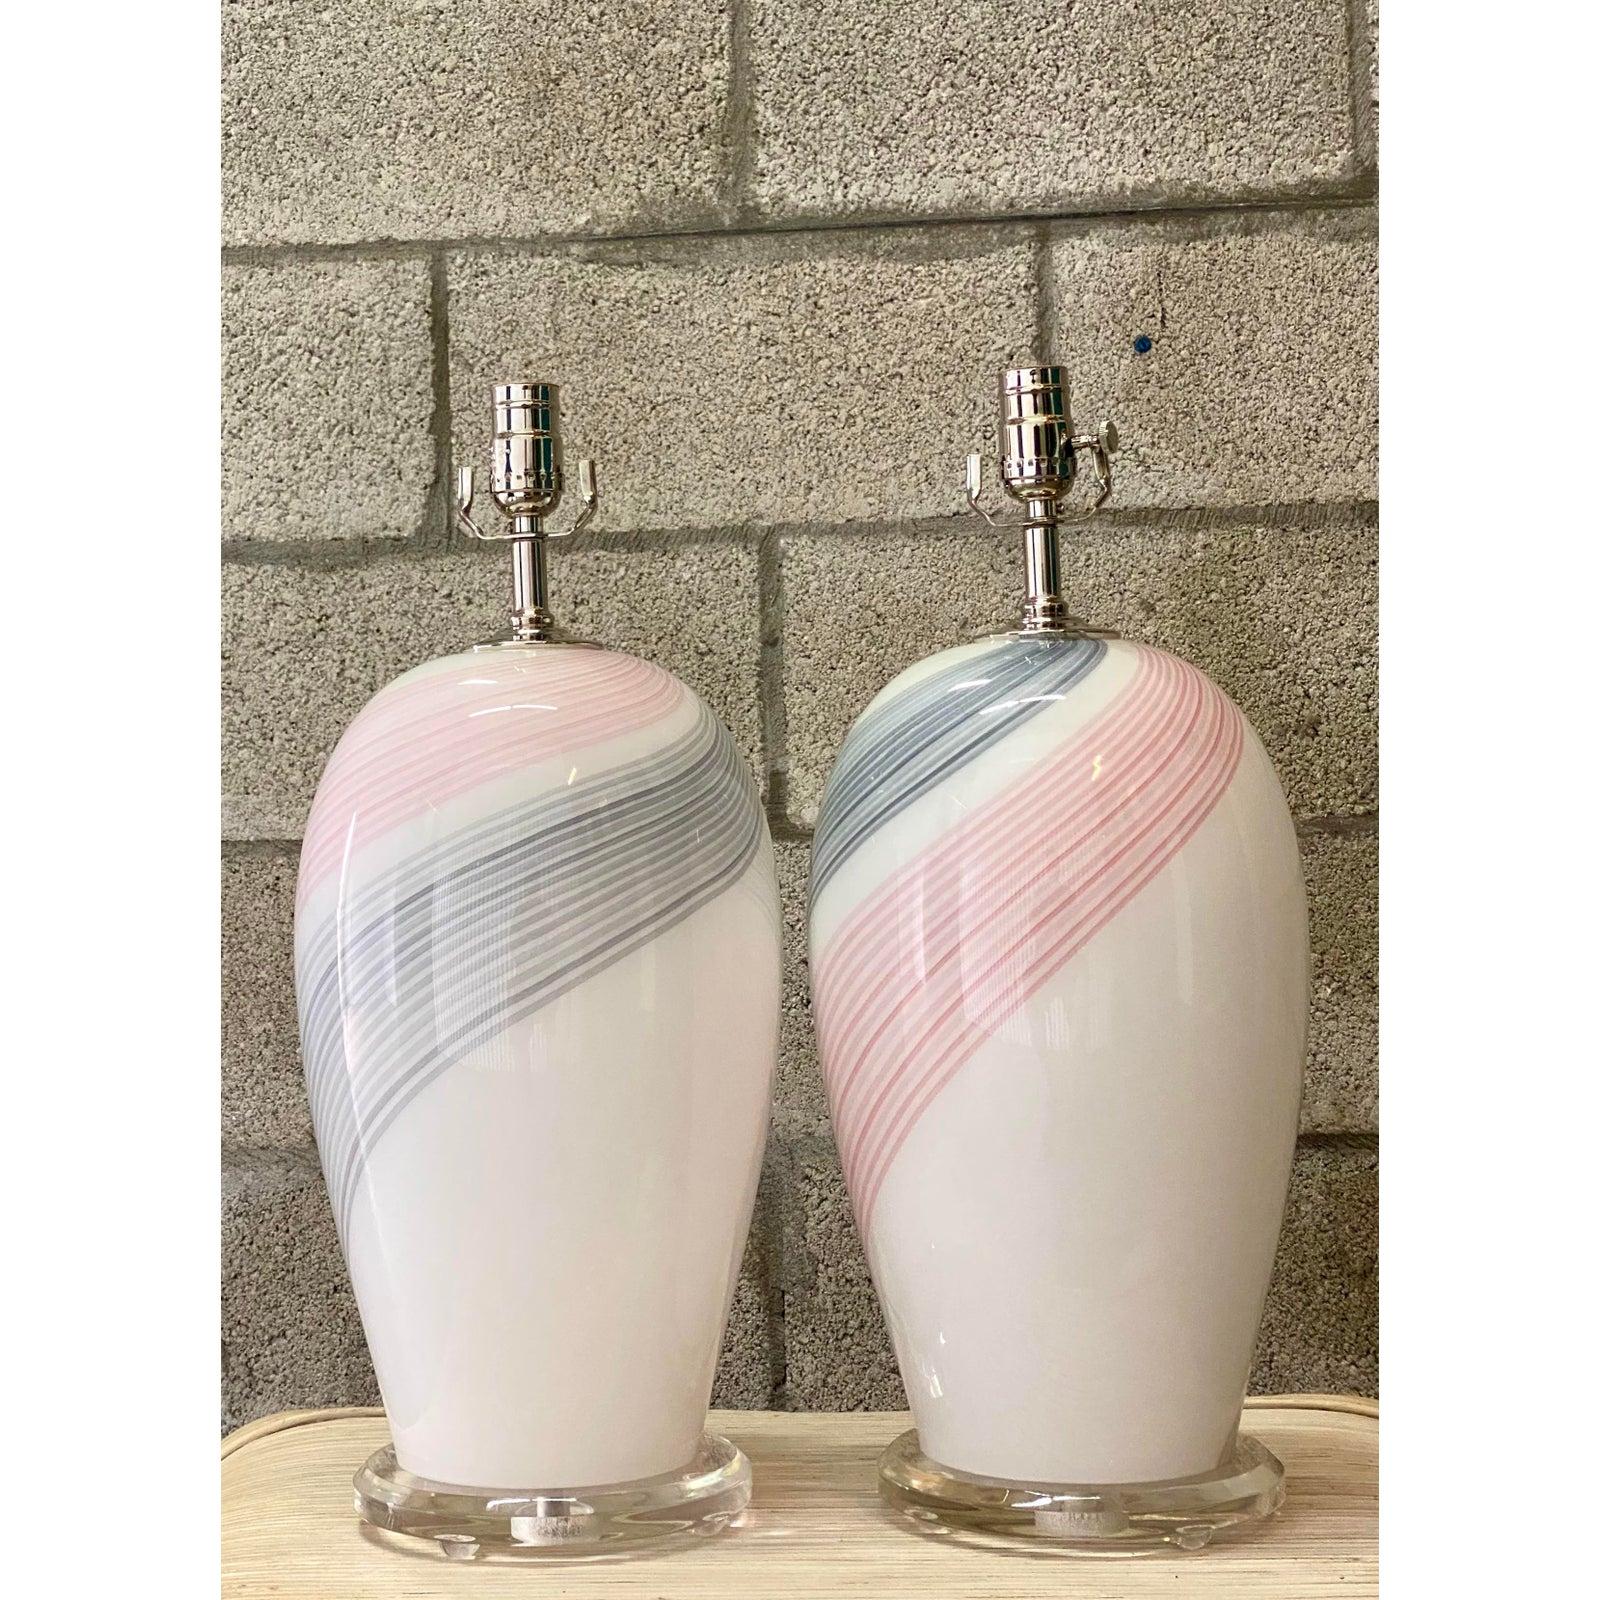 Fantastique paire de lampes vintage en verre de Murano. Un magnifique motif tourbillonnant en rose et gris. Repose sur un socle en lucite. Entièrement restauré avec tout le nouveau matériel et le câblage par Heath Lighting de Palm Beach. Acquis